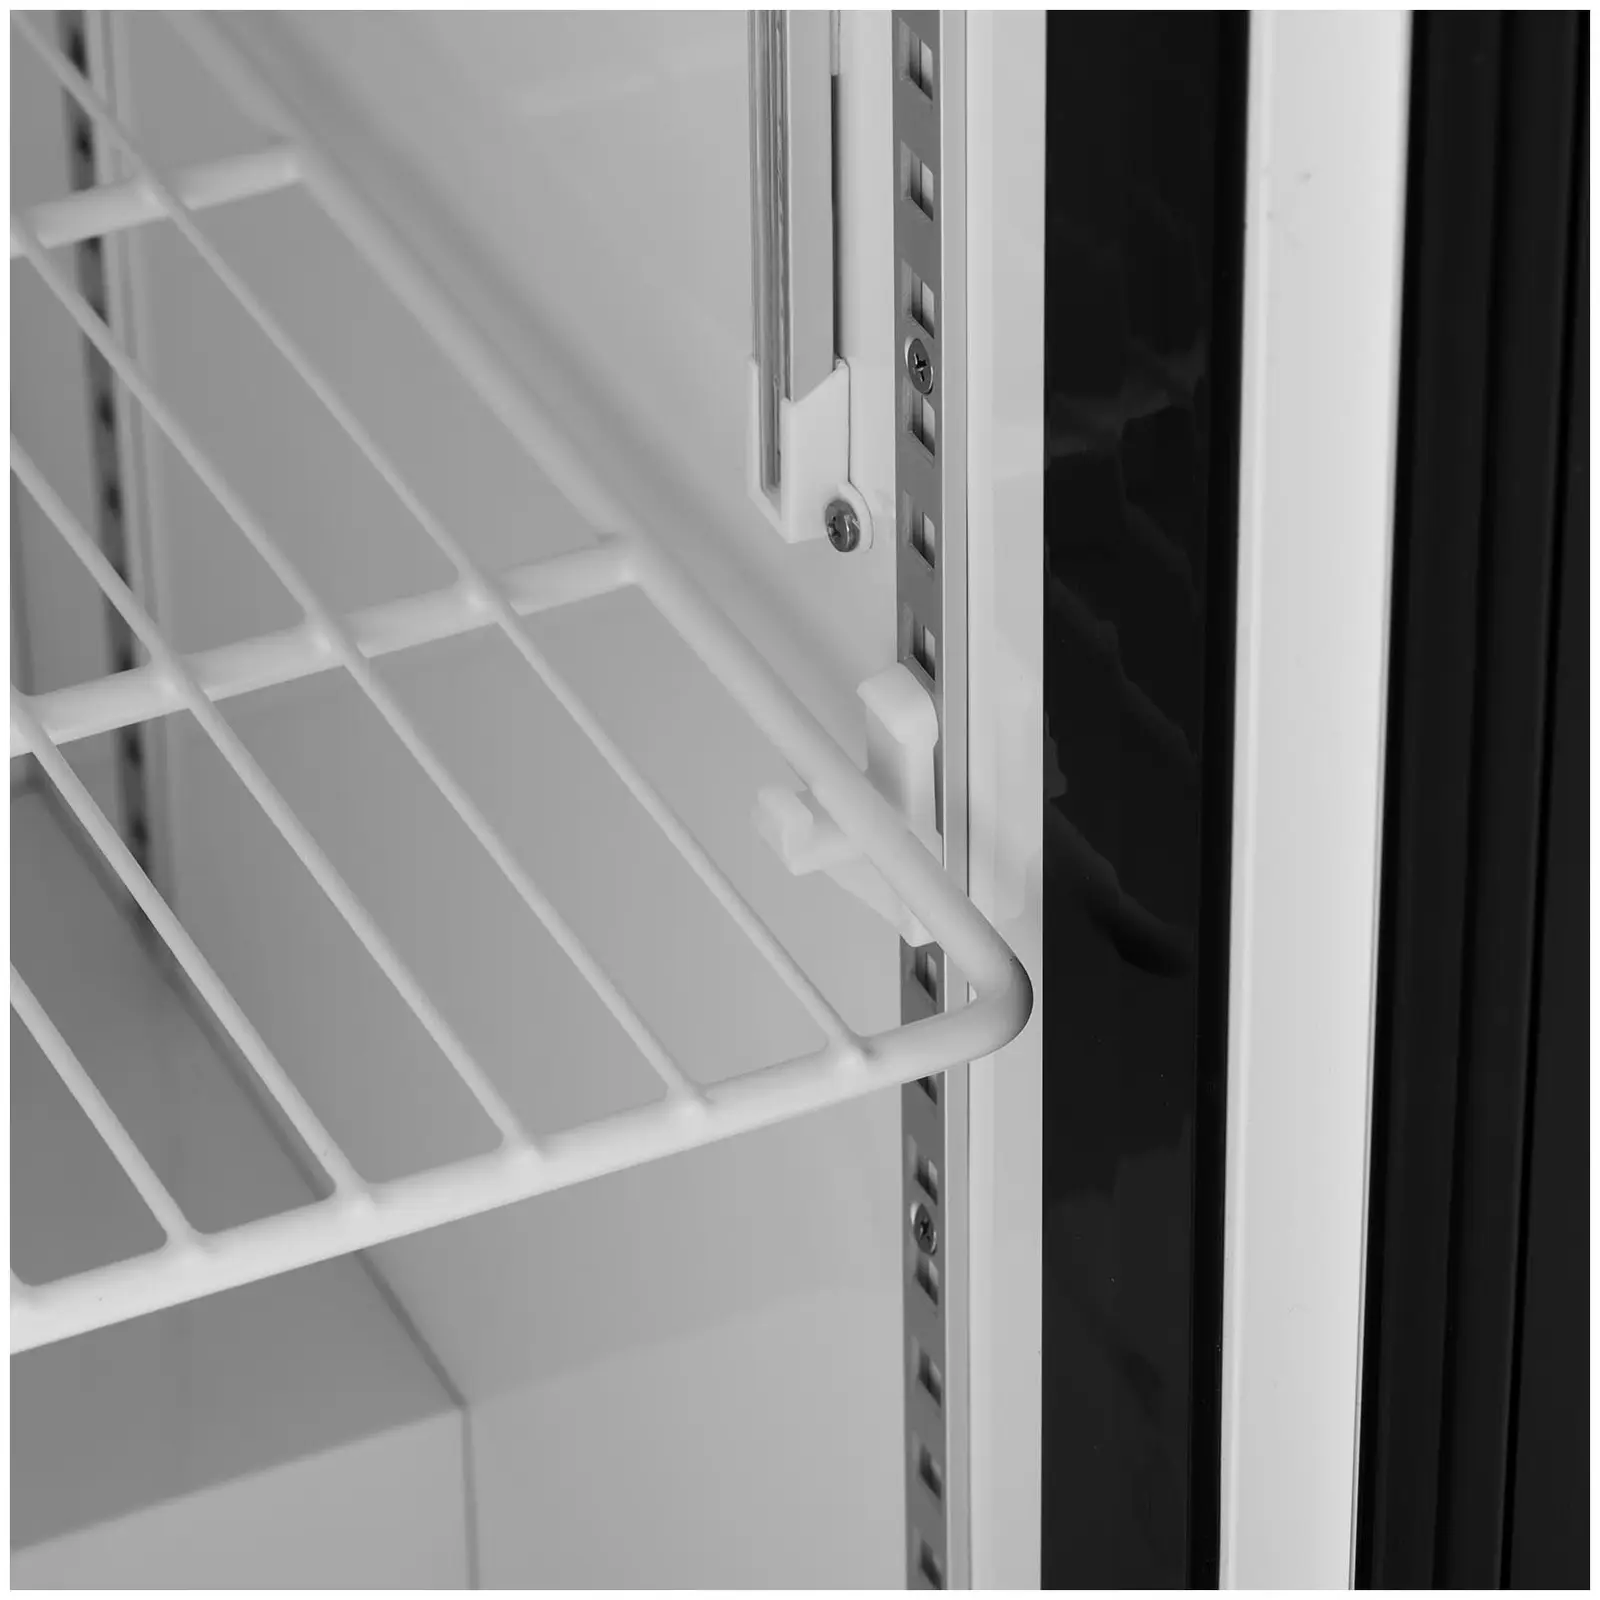 Gastro chladnička - 380 l - Royal Catering - s presklenými dverami